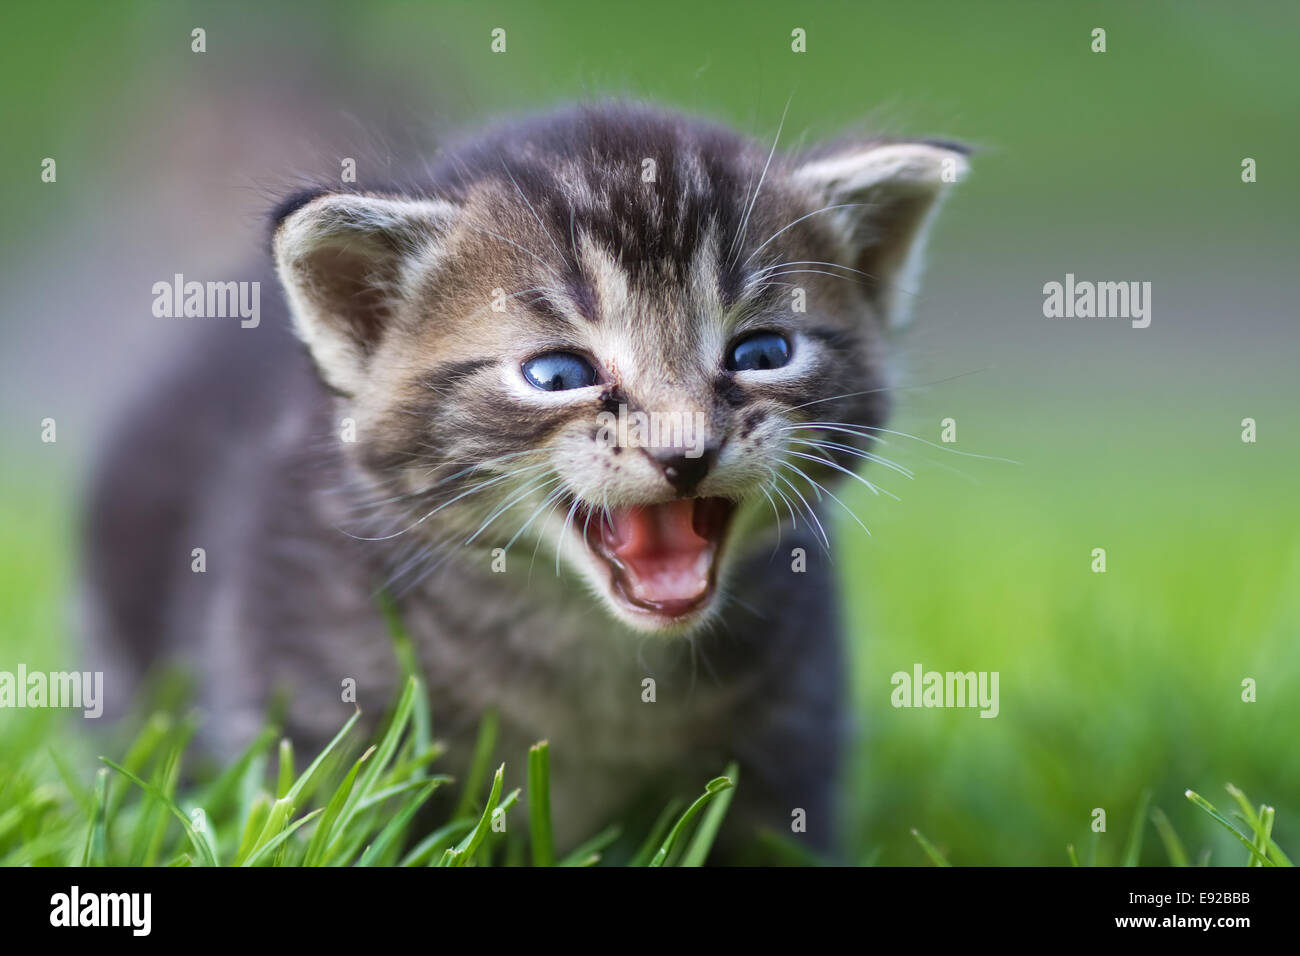 cute kitten Stock Photo